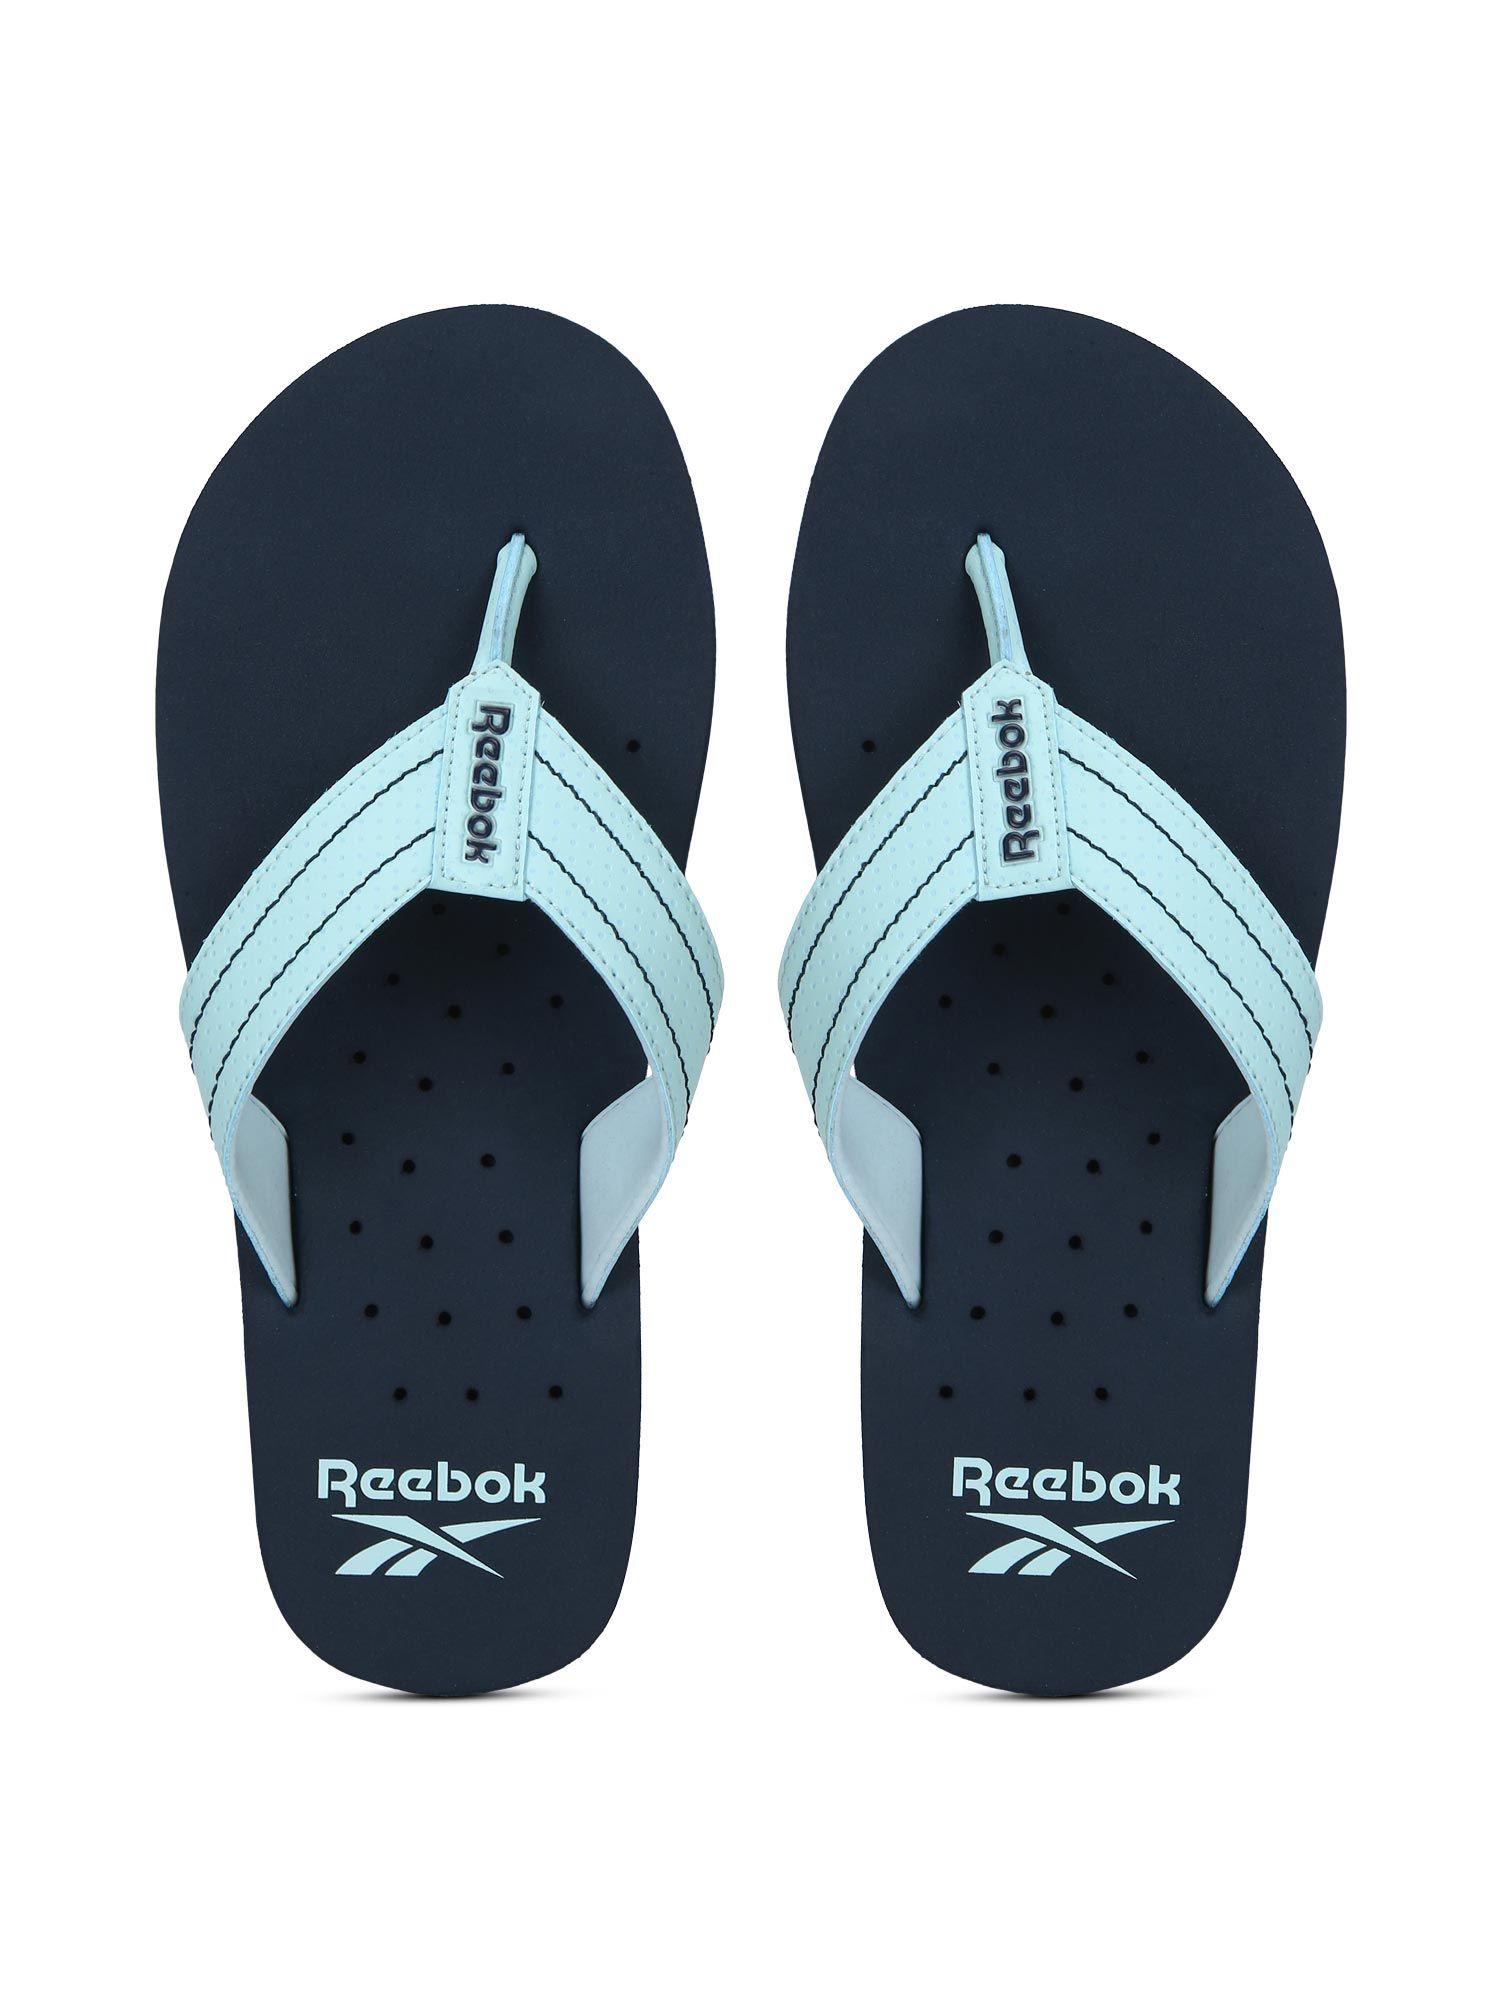 robb flip pro navy blue swim flipflops